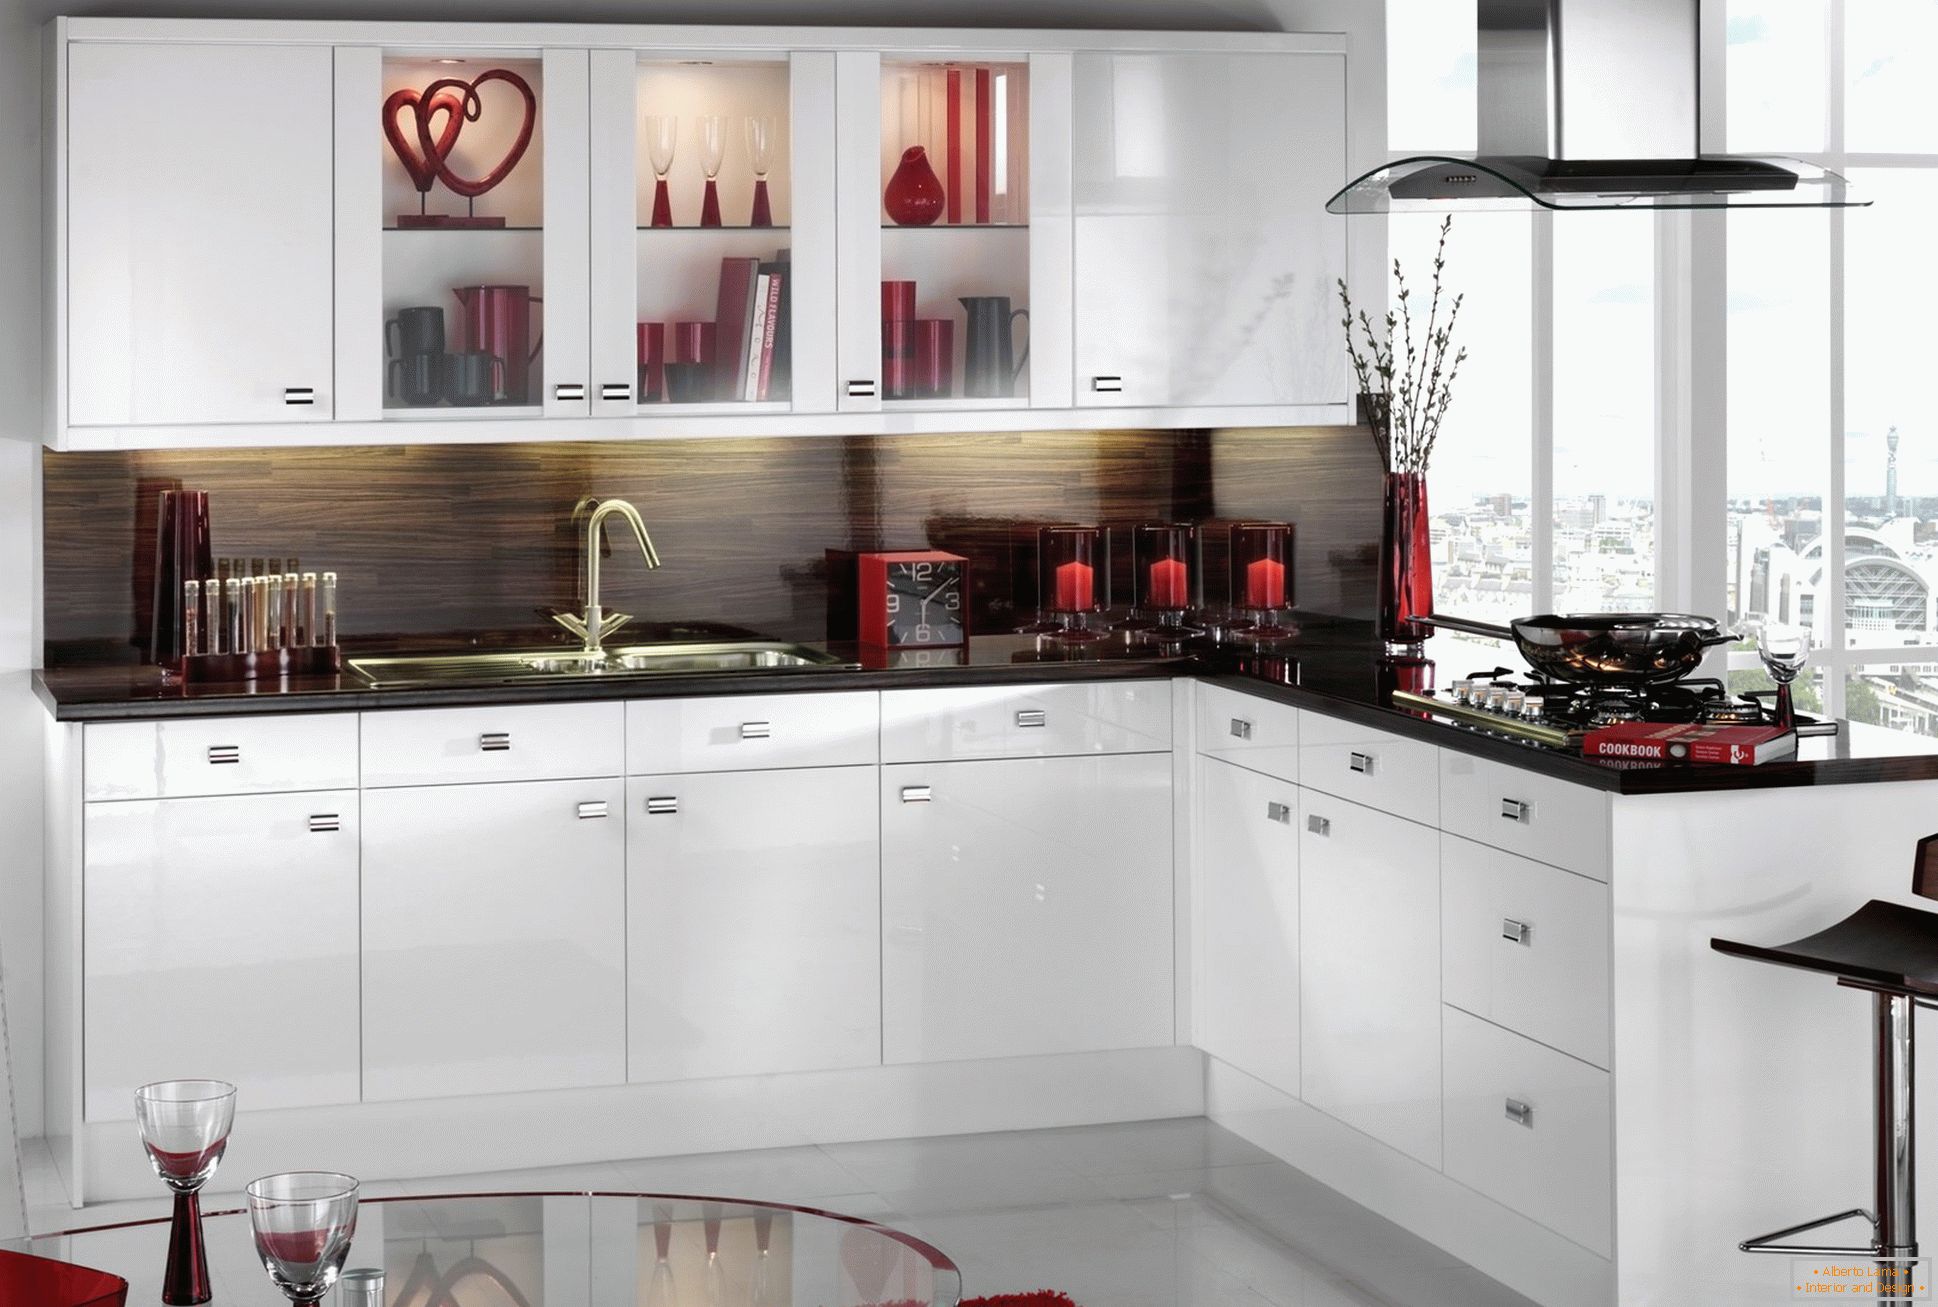 Negro y rojo en el diseño de la cocina blanca